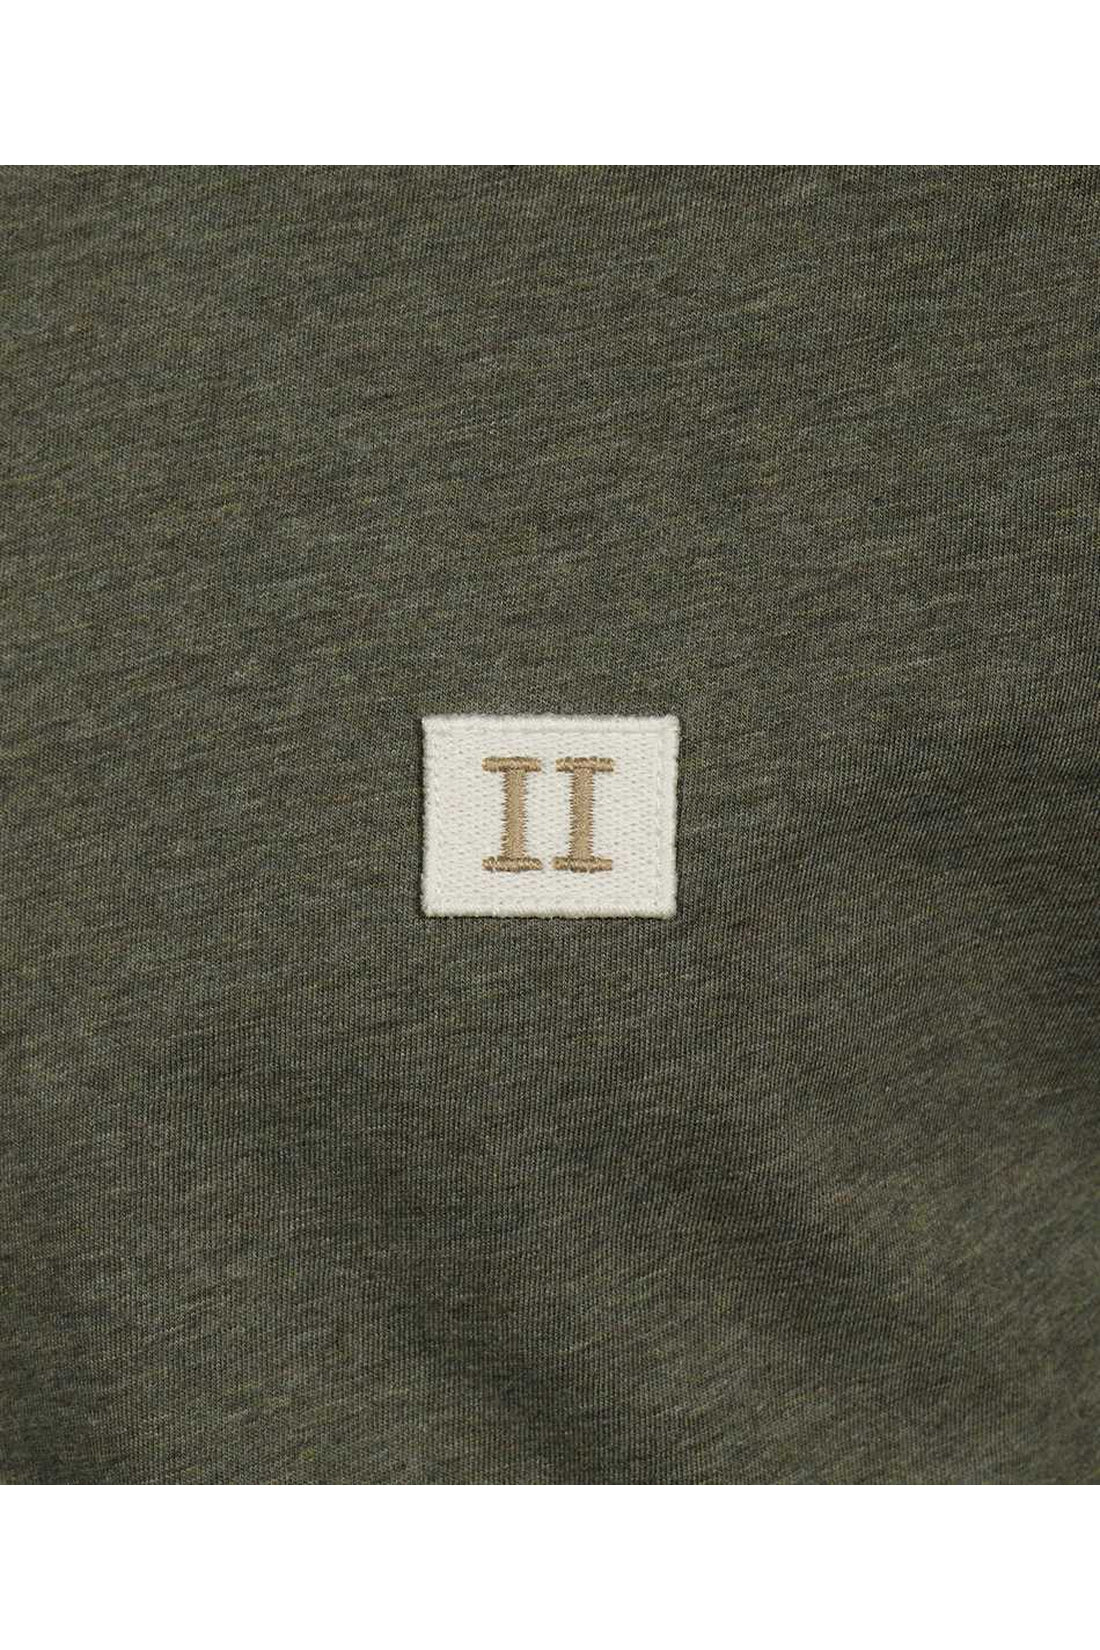 Les Deux-OUTLET-SALE-Logo cotton t-shirt-ARCHIVIST